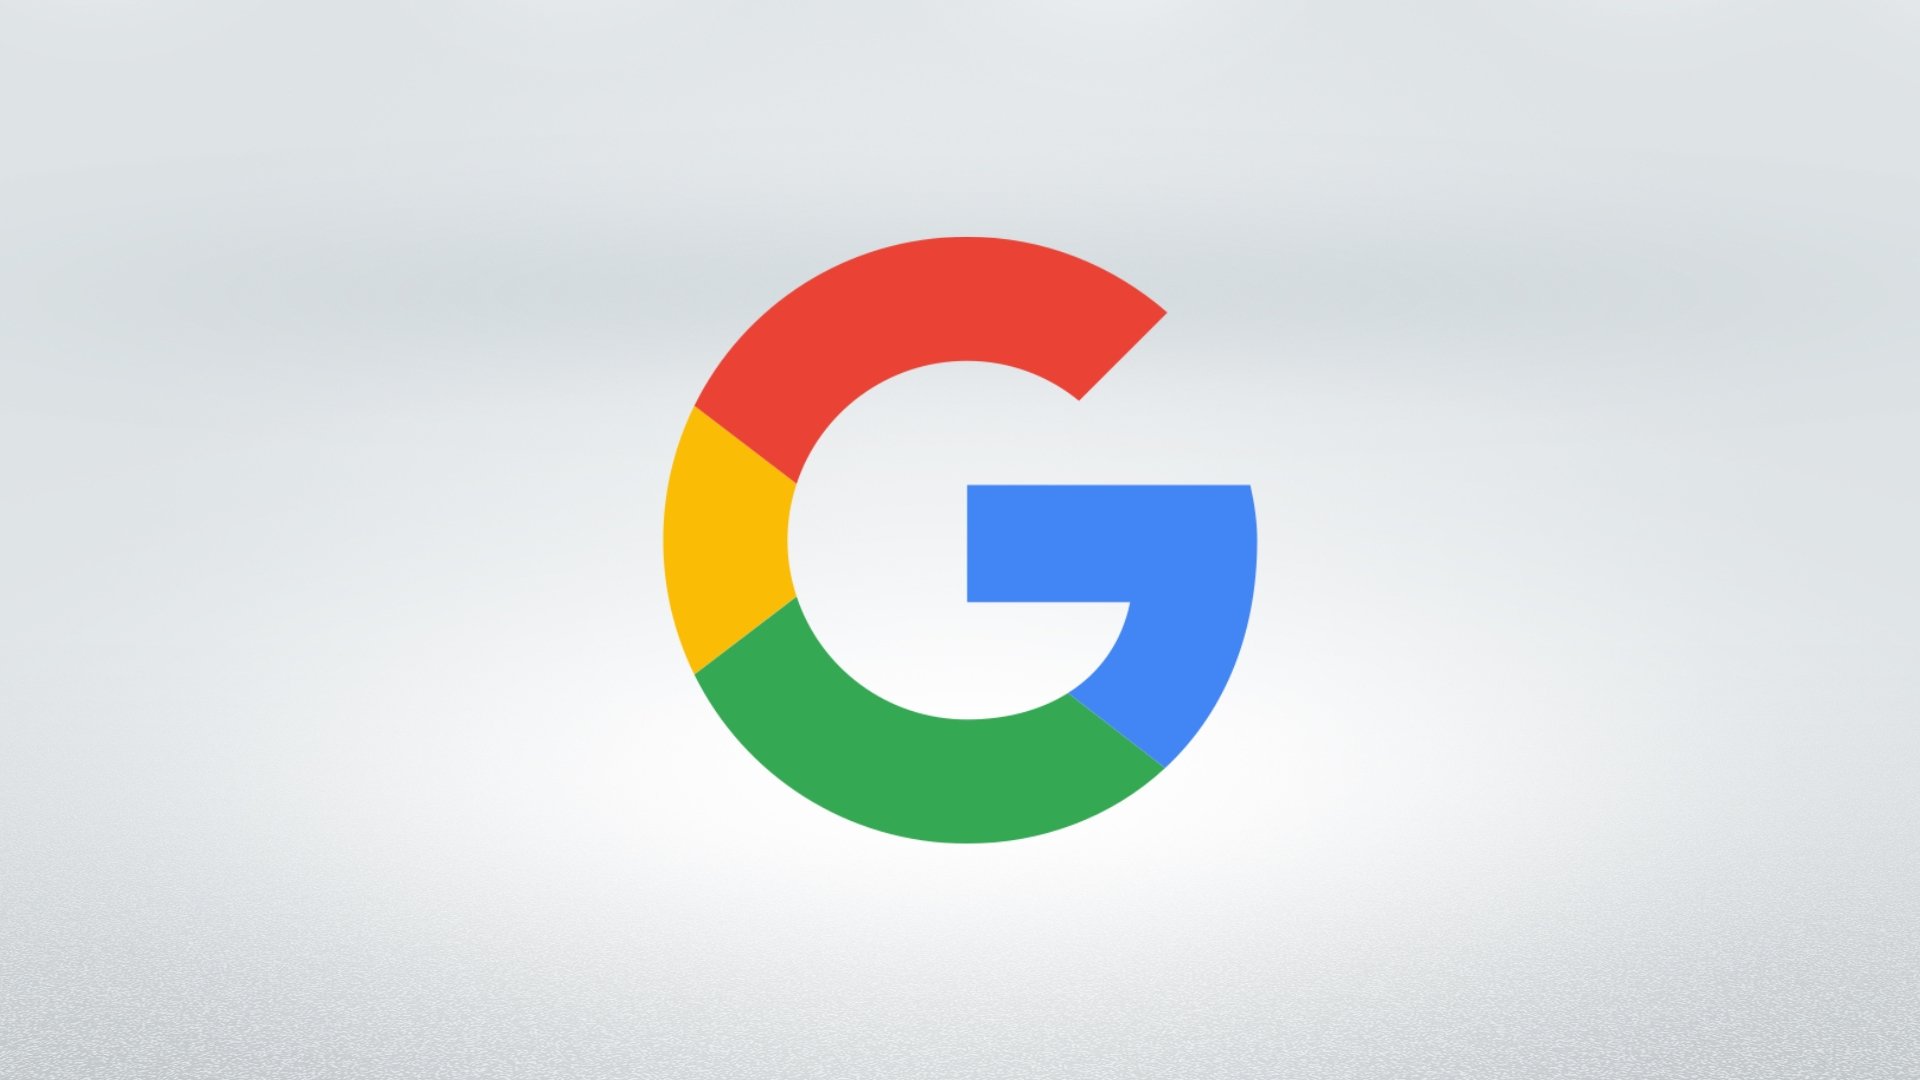 Logo da Google sobre fundo branco